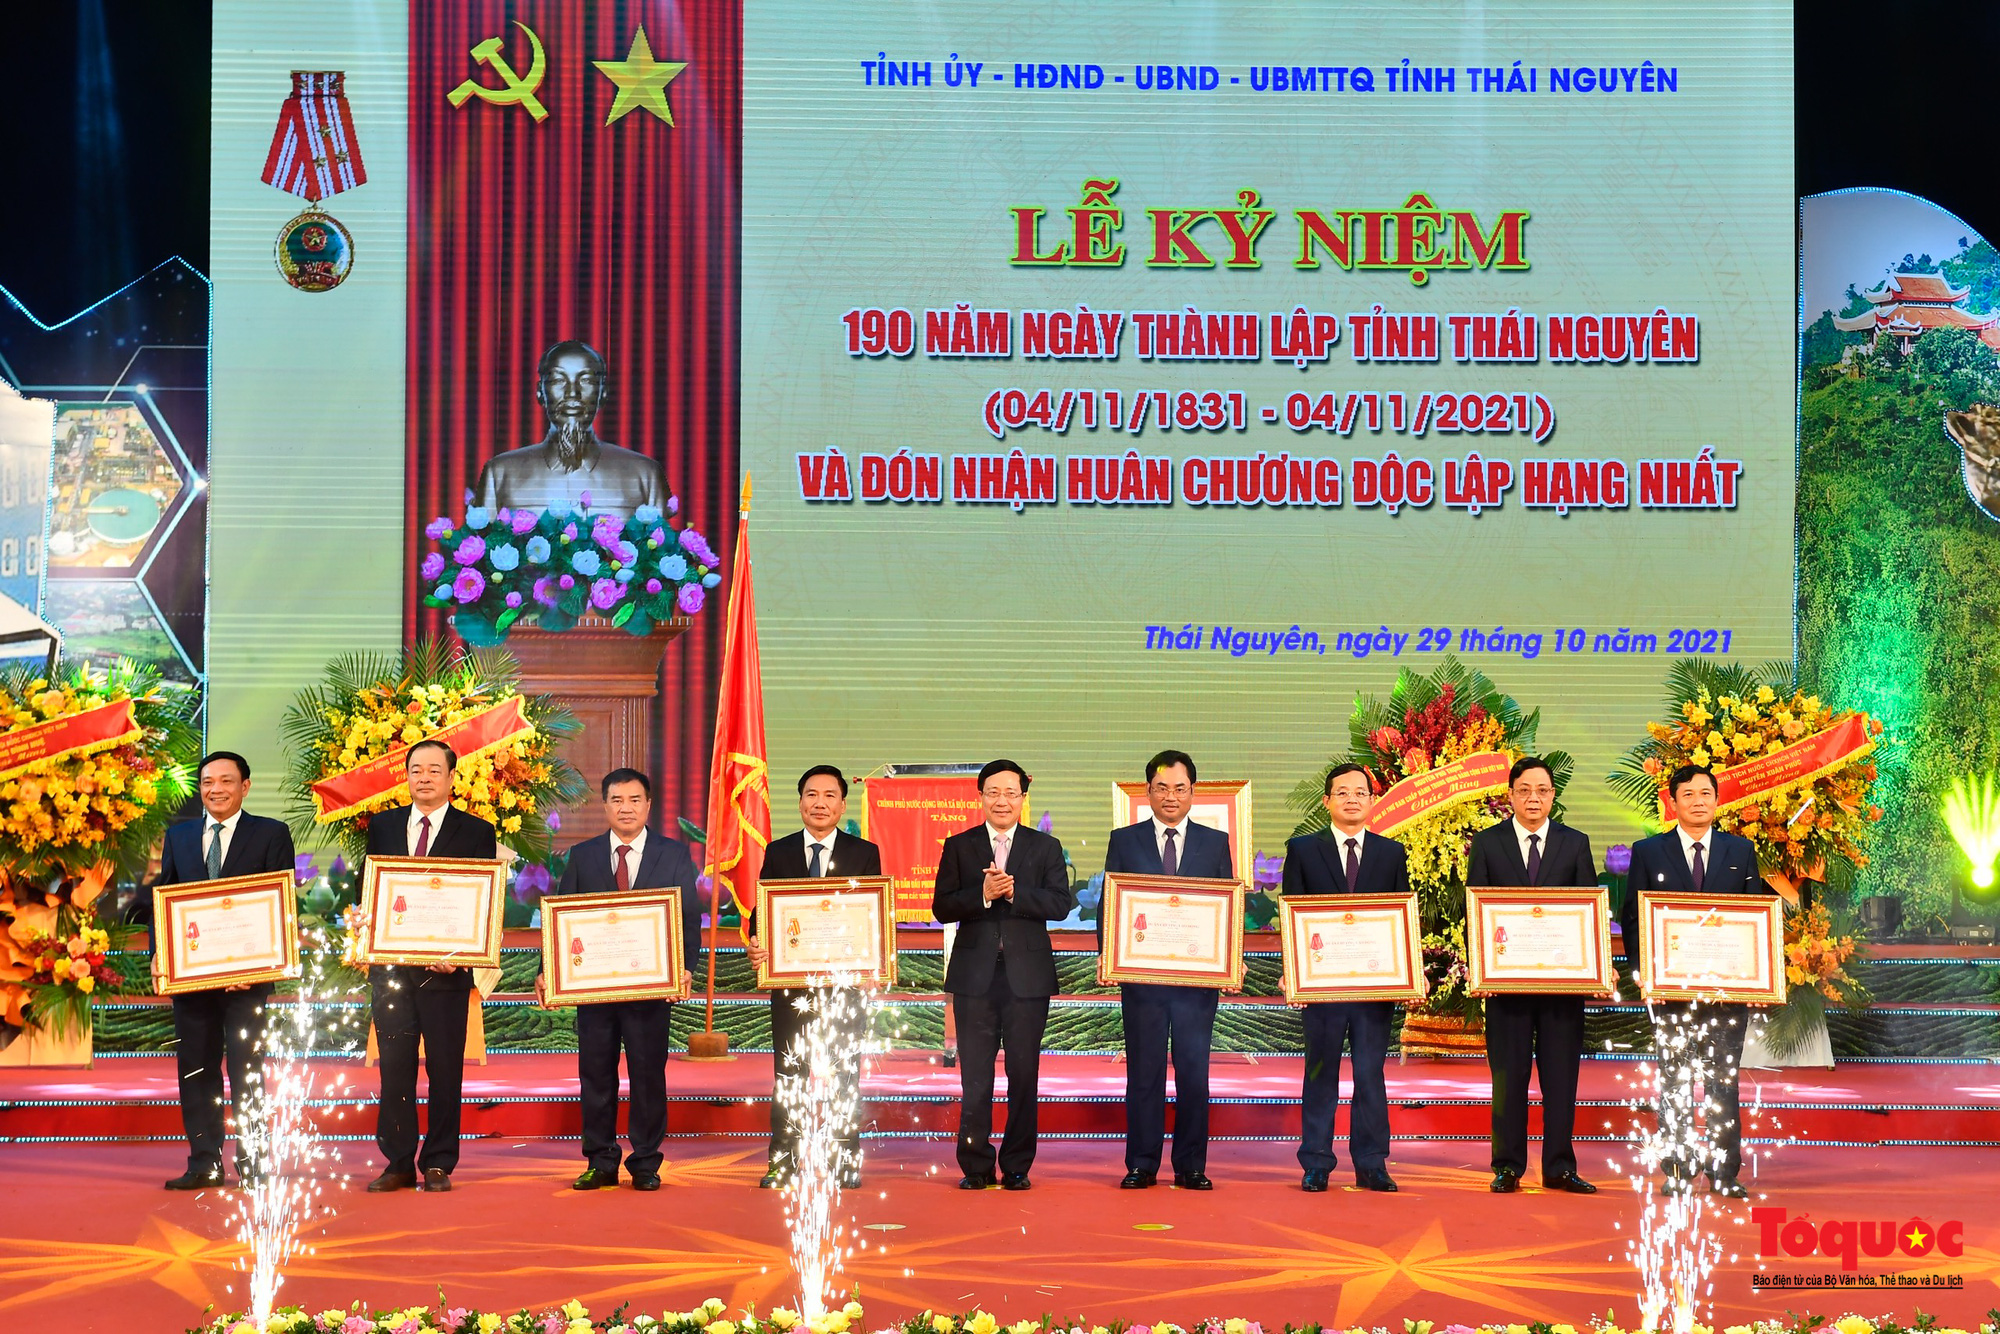 Tỉnh Thái Nguyên kỷ niệm 190 năm thành lập và đón nhận Huân chương Độc lập hạng Nhất - Ảnh 10.